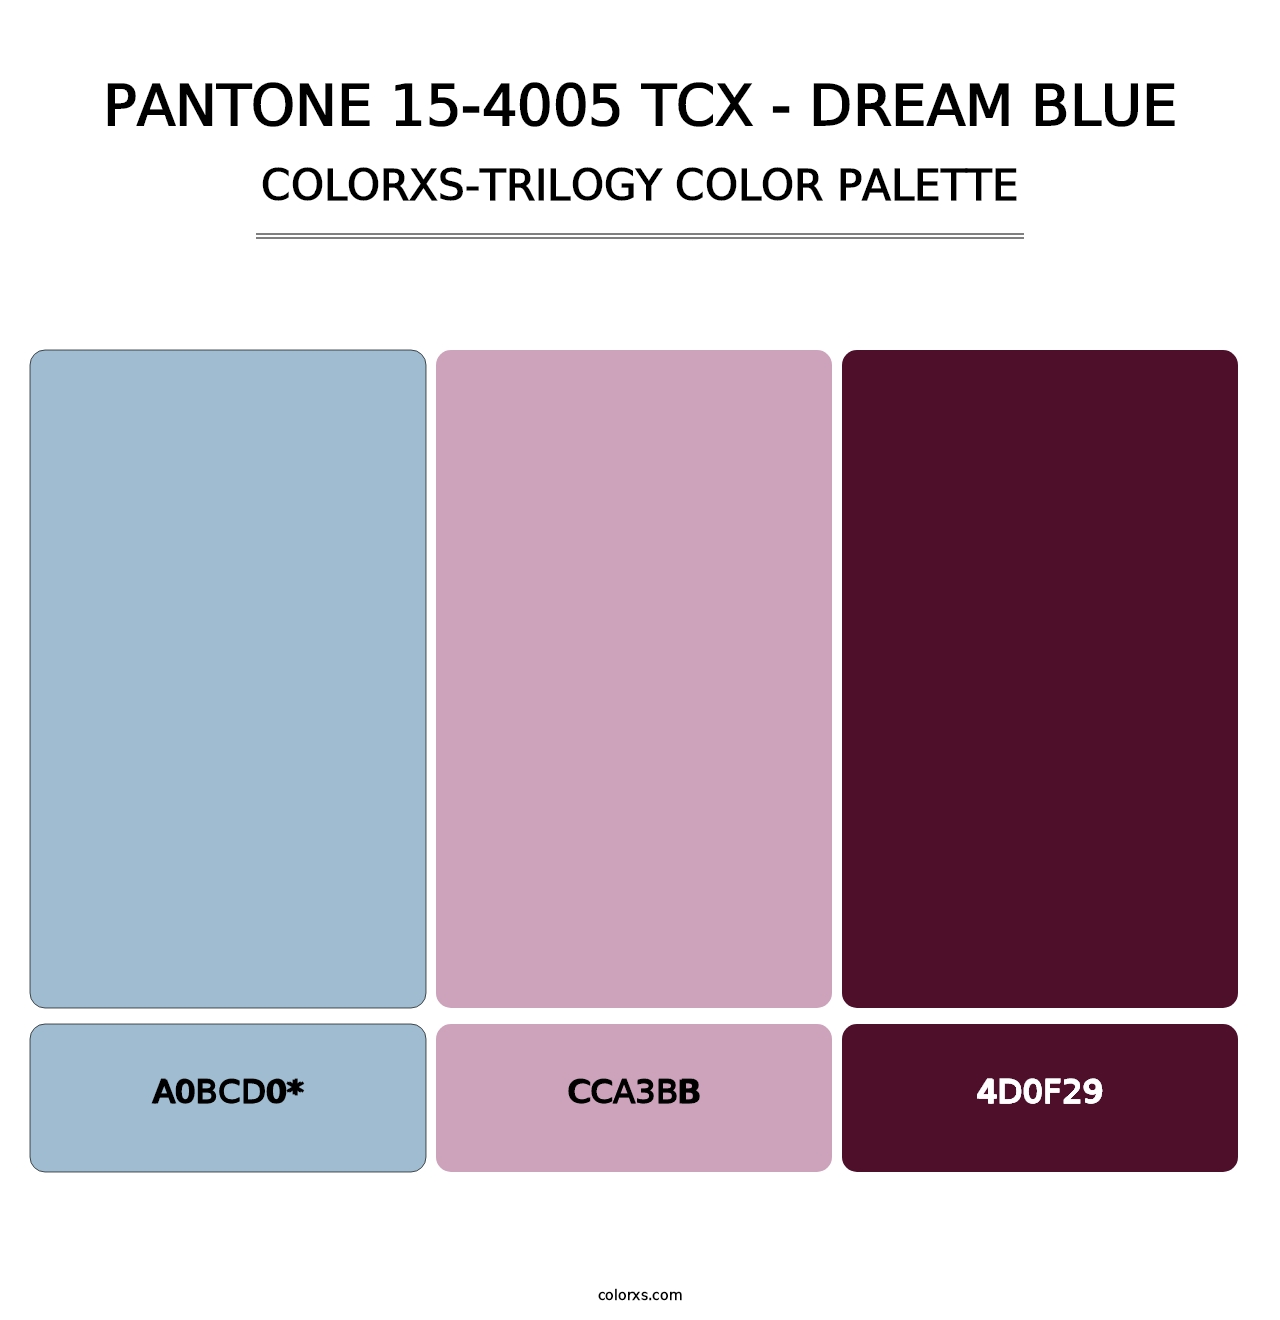 PANTONE 15-4005 TCX - Dream Blue - Colorxs Trilogy Palette